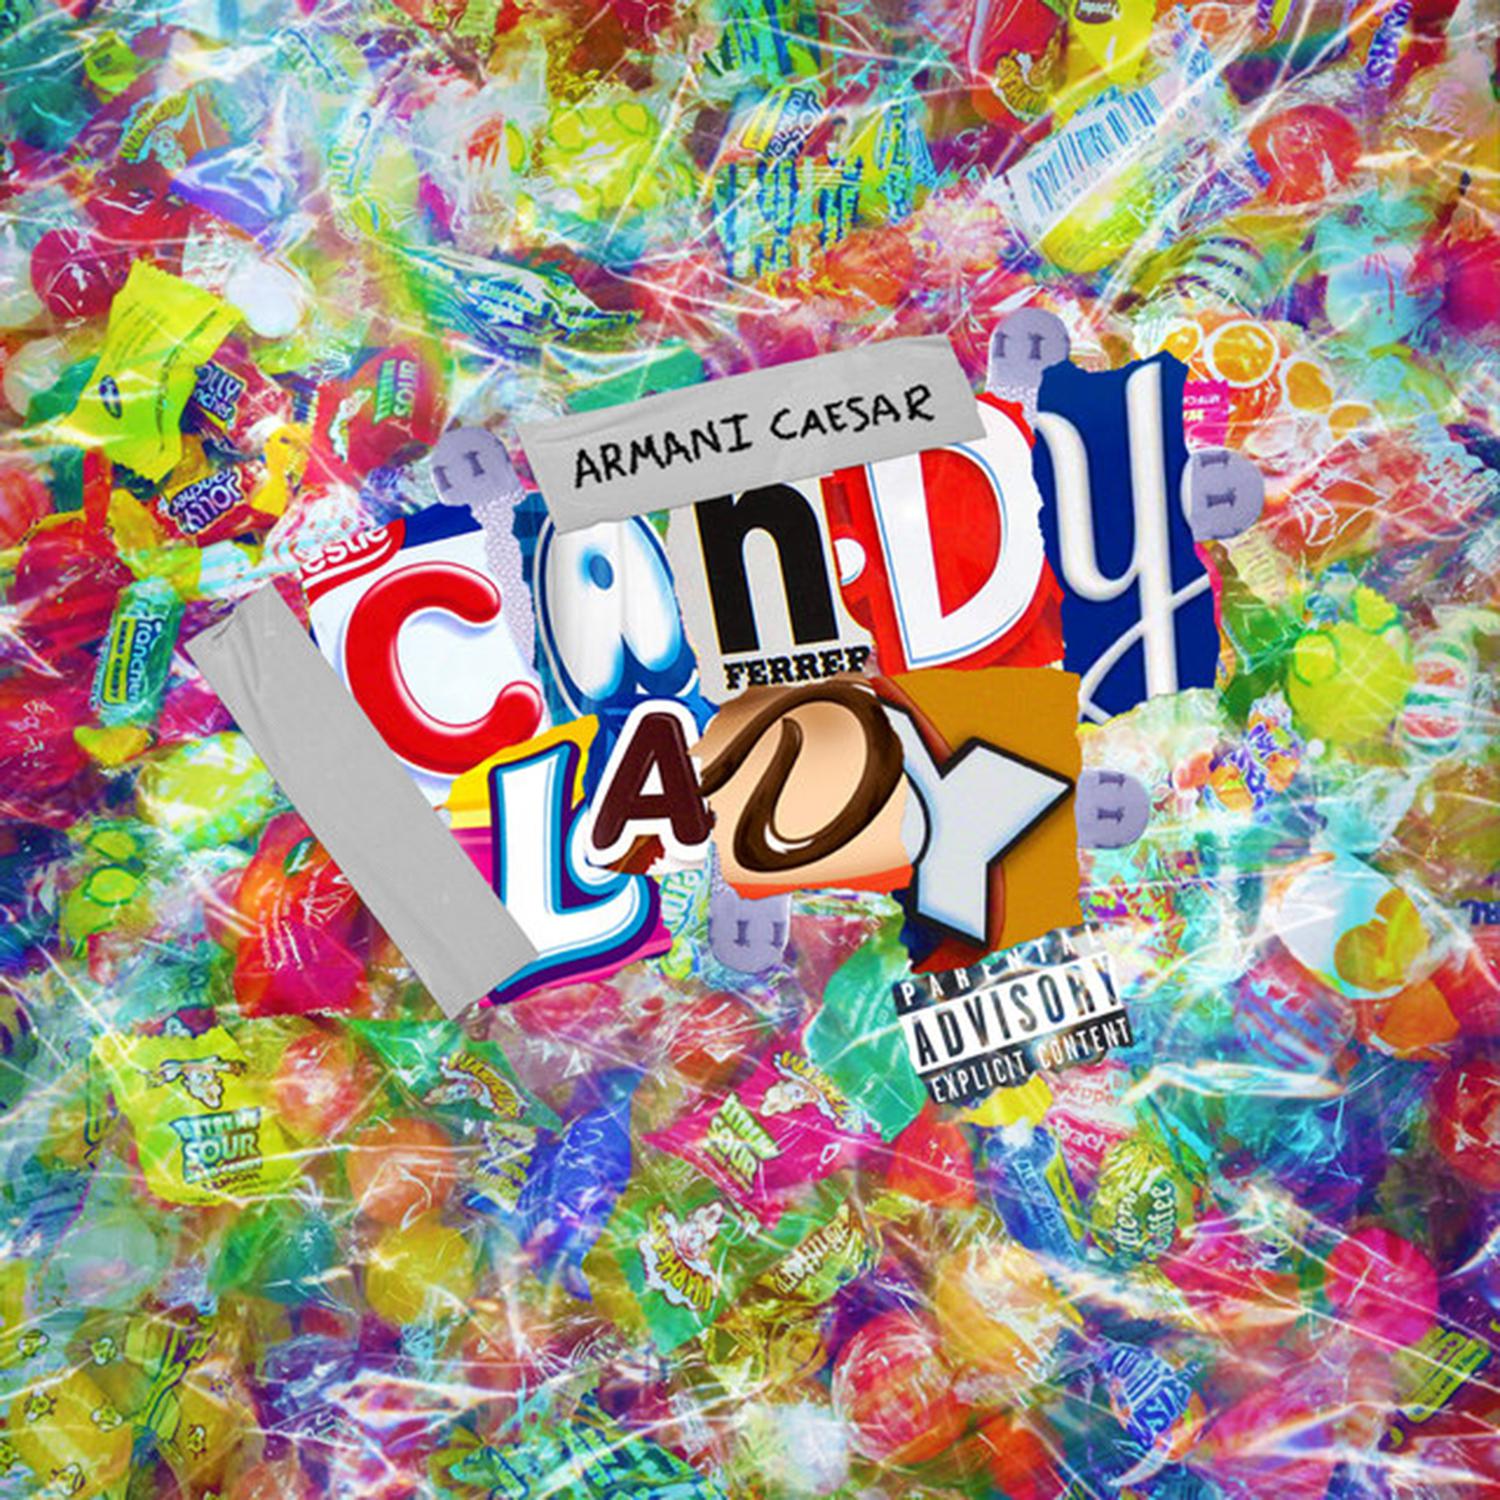 Armani Caesar - Candy Lady